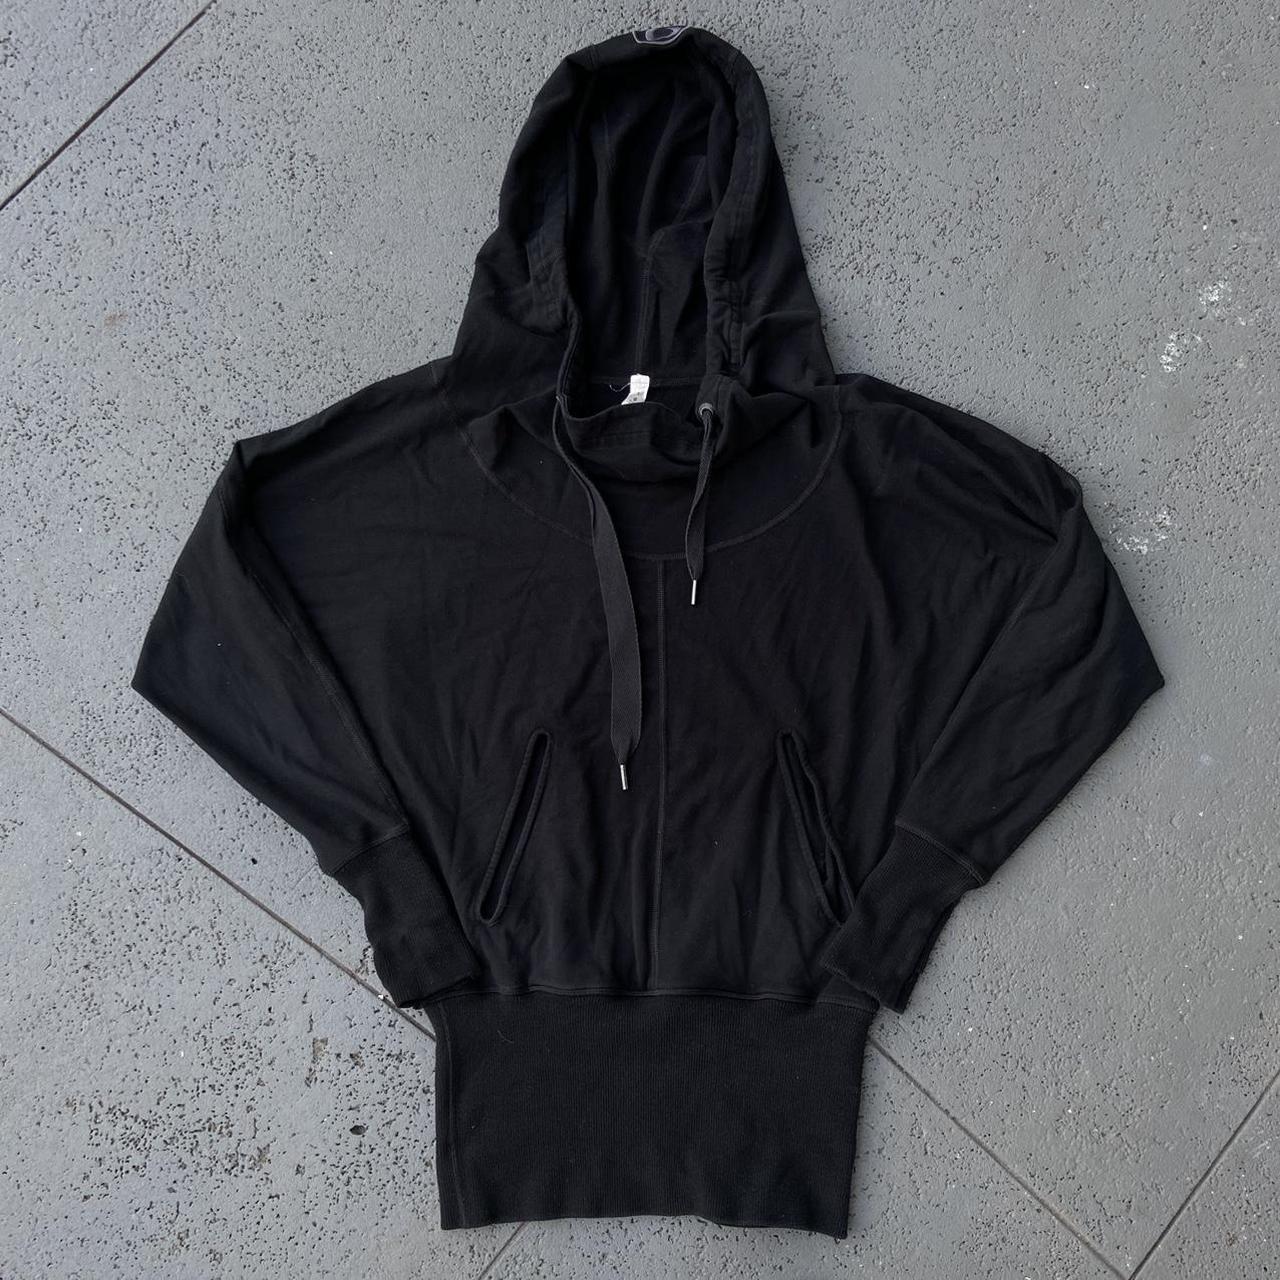 lululemon black hoodie sweatshirt size 6 good - Depop